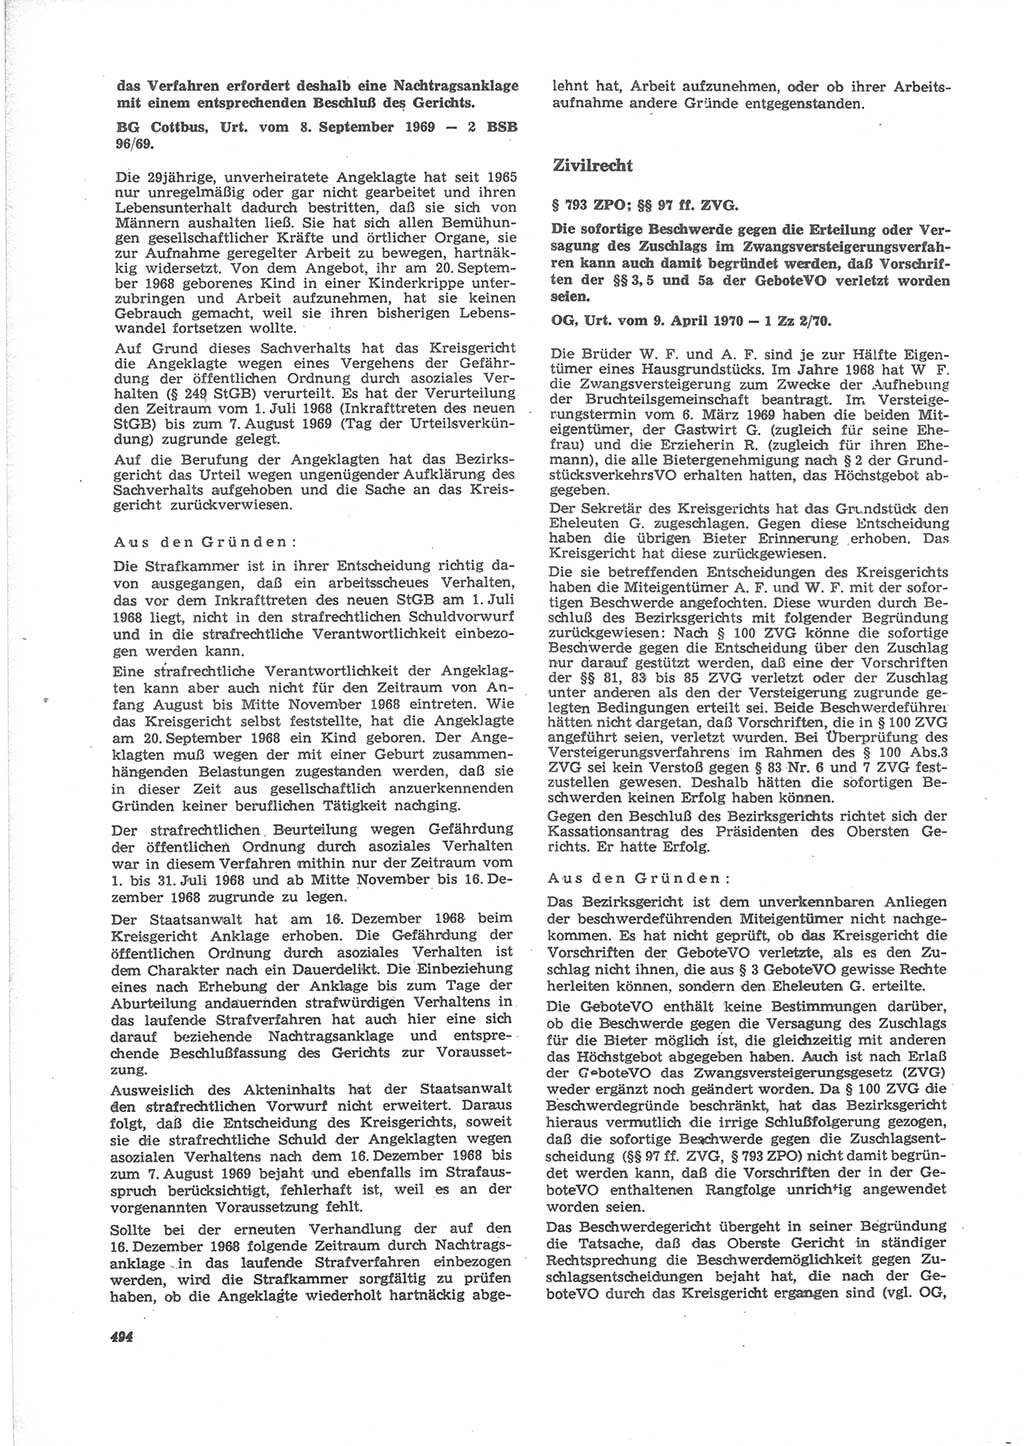 Neue Justiz (NJ), Zeitschrift für Recht und Rechtswissenschaft [Deutsche Demokratische Republik (DDR)], 24. Jahrgang 1970, Seite 494 (NJ DDR 1970, S. 494)